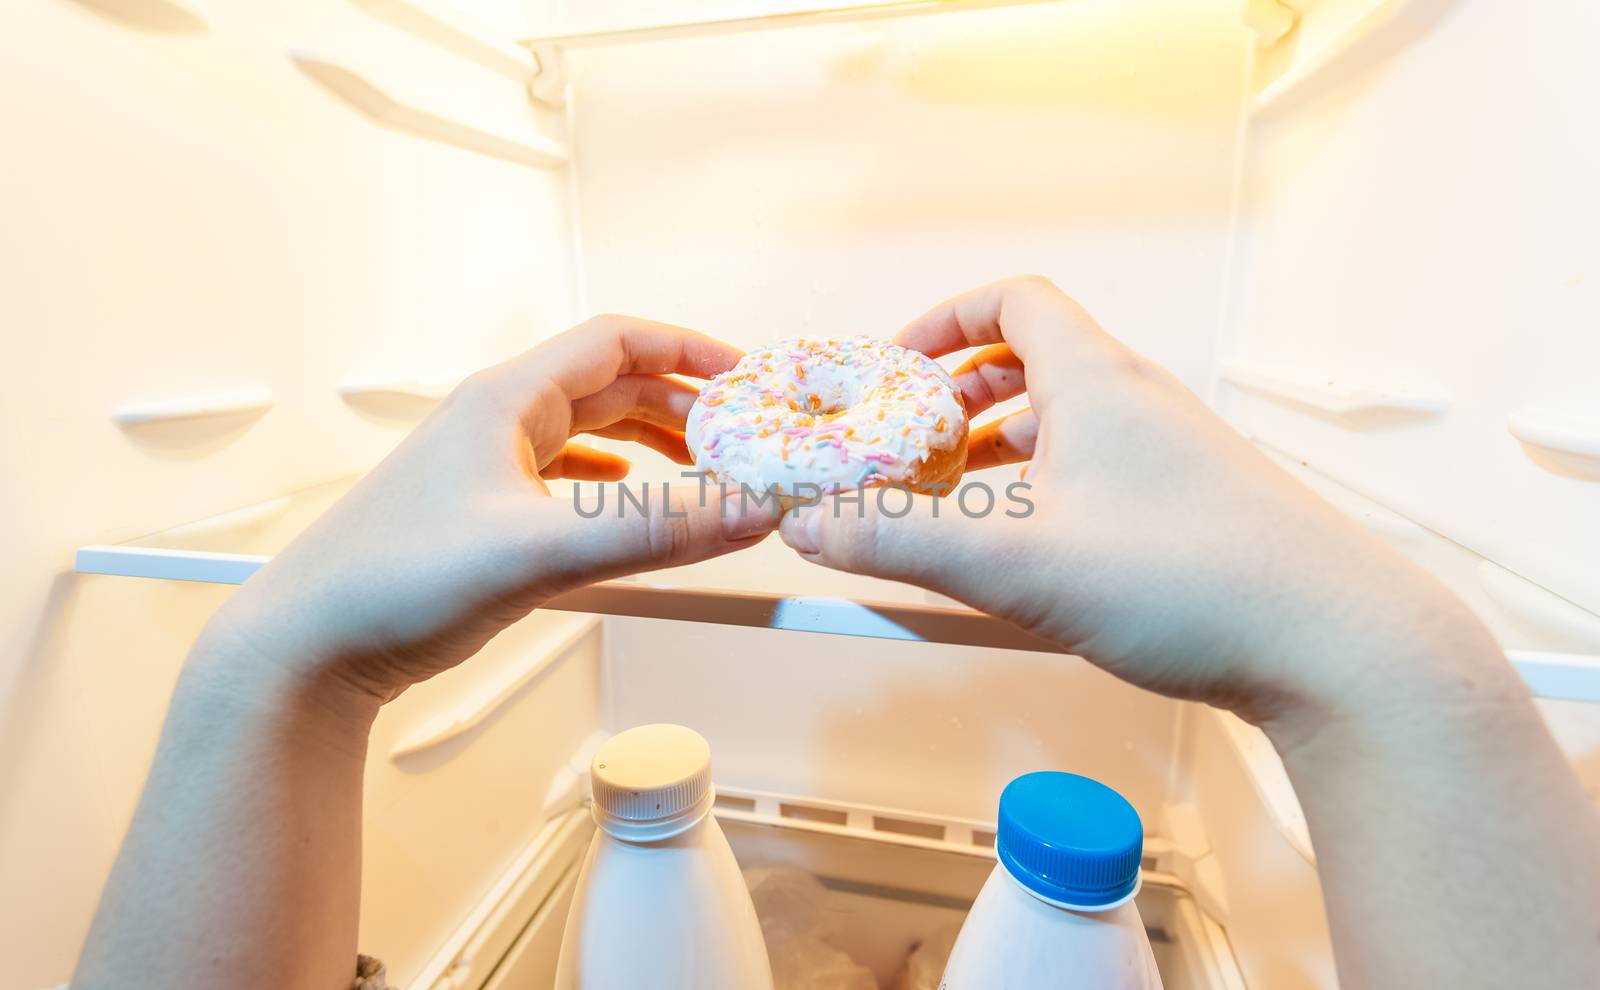 photo of female hand taking donut from refrigerator by Kryzhov